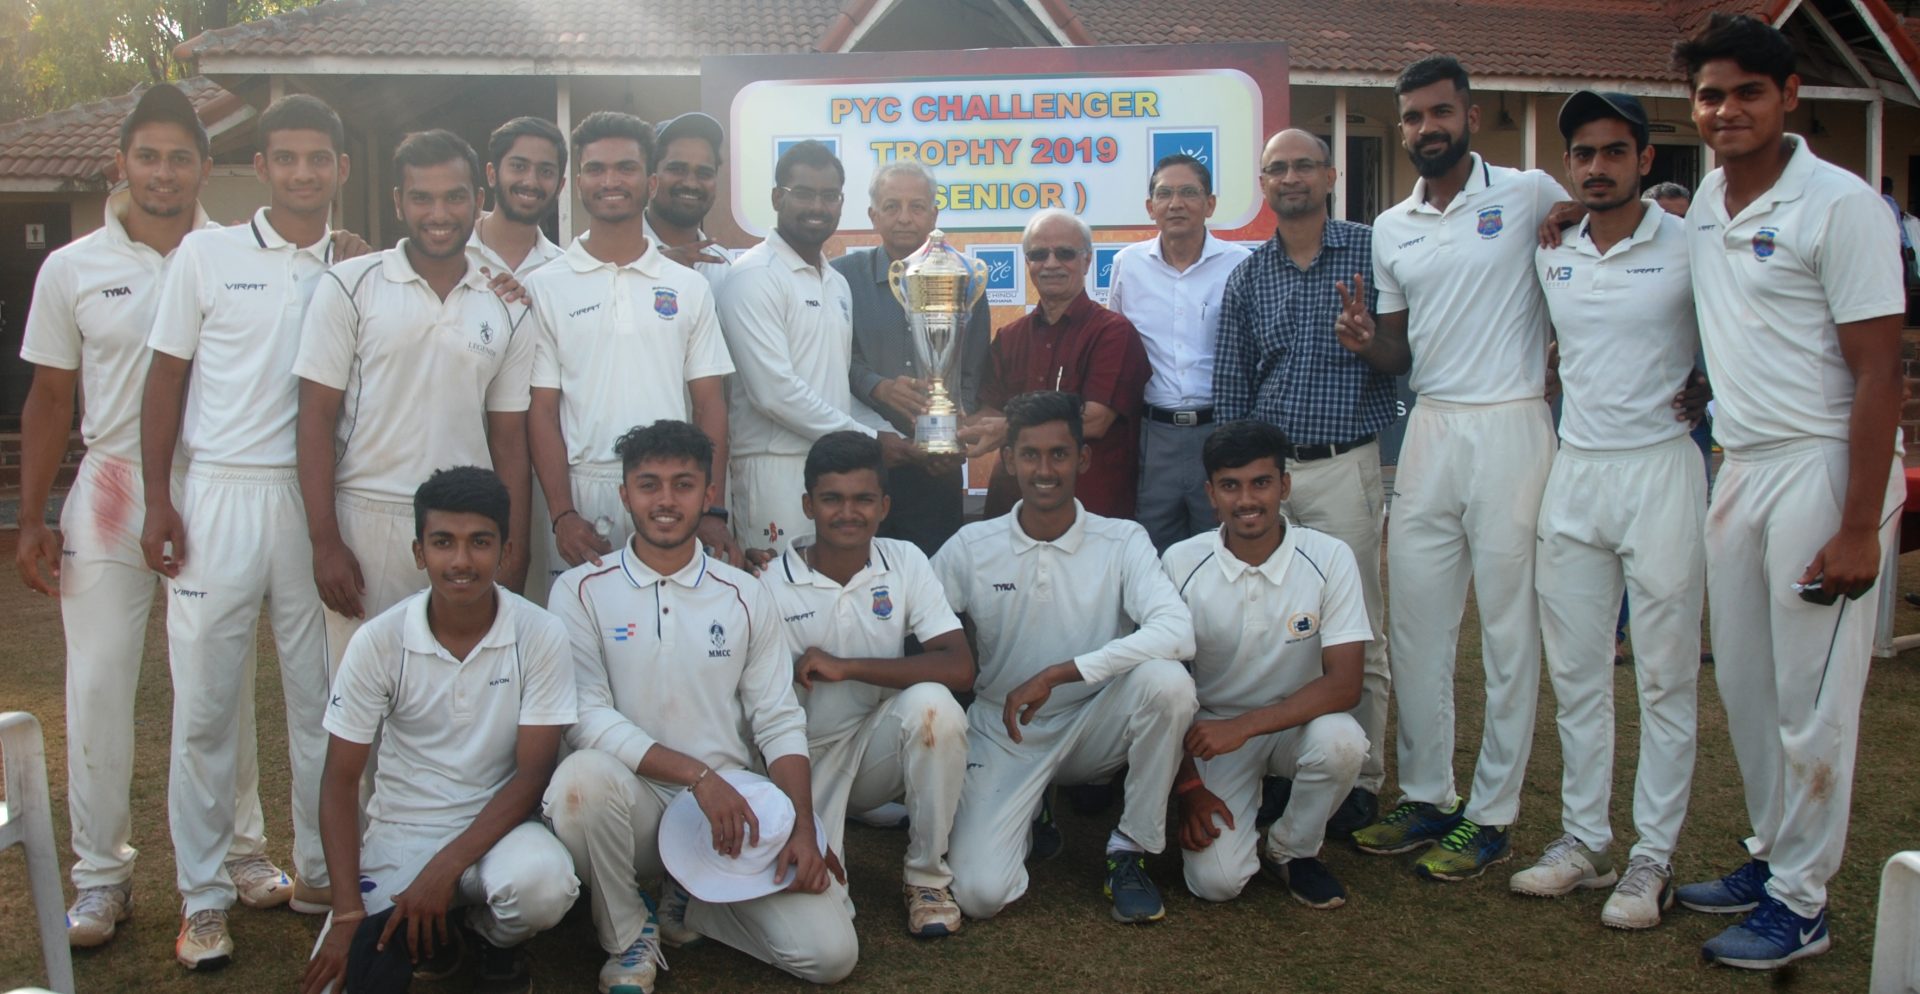 पीवायसी चॅलेंजर करंडक 3दिवसीय निमंत्रित क्रिकेट स्पर्धेत डेक्कन जिमखाना संघाला विजेतेपद